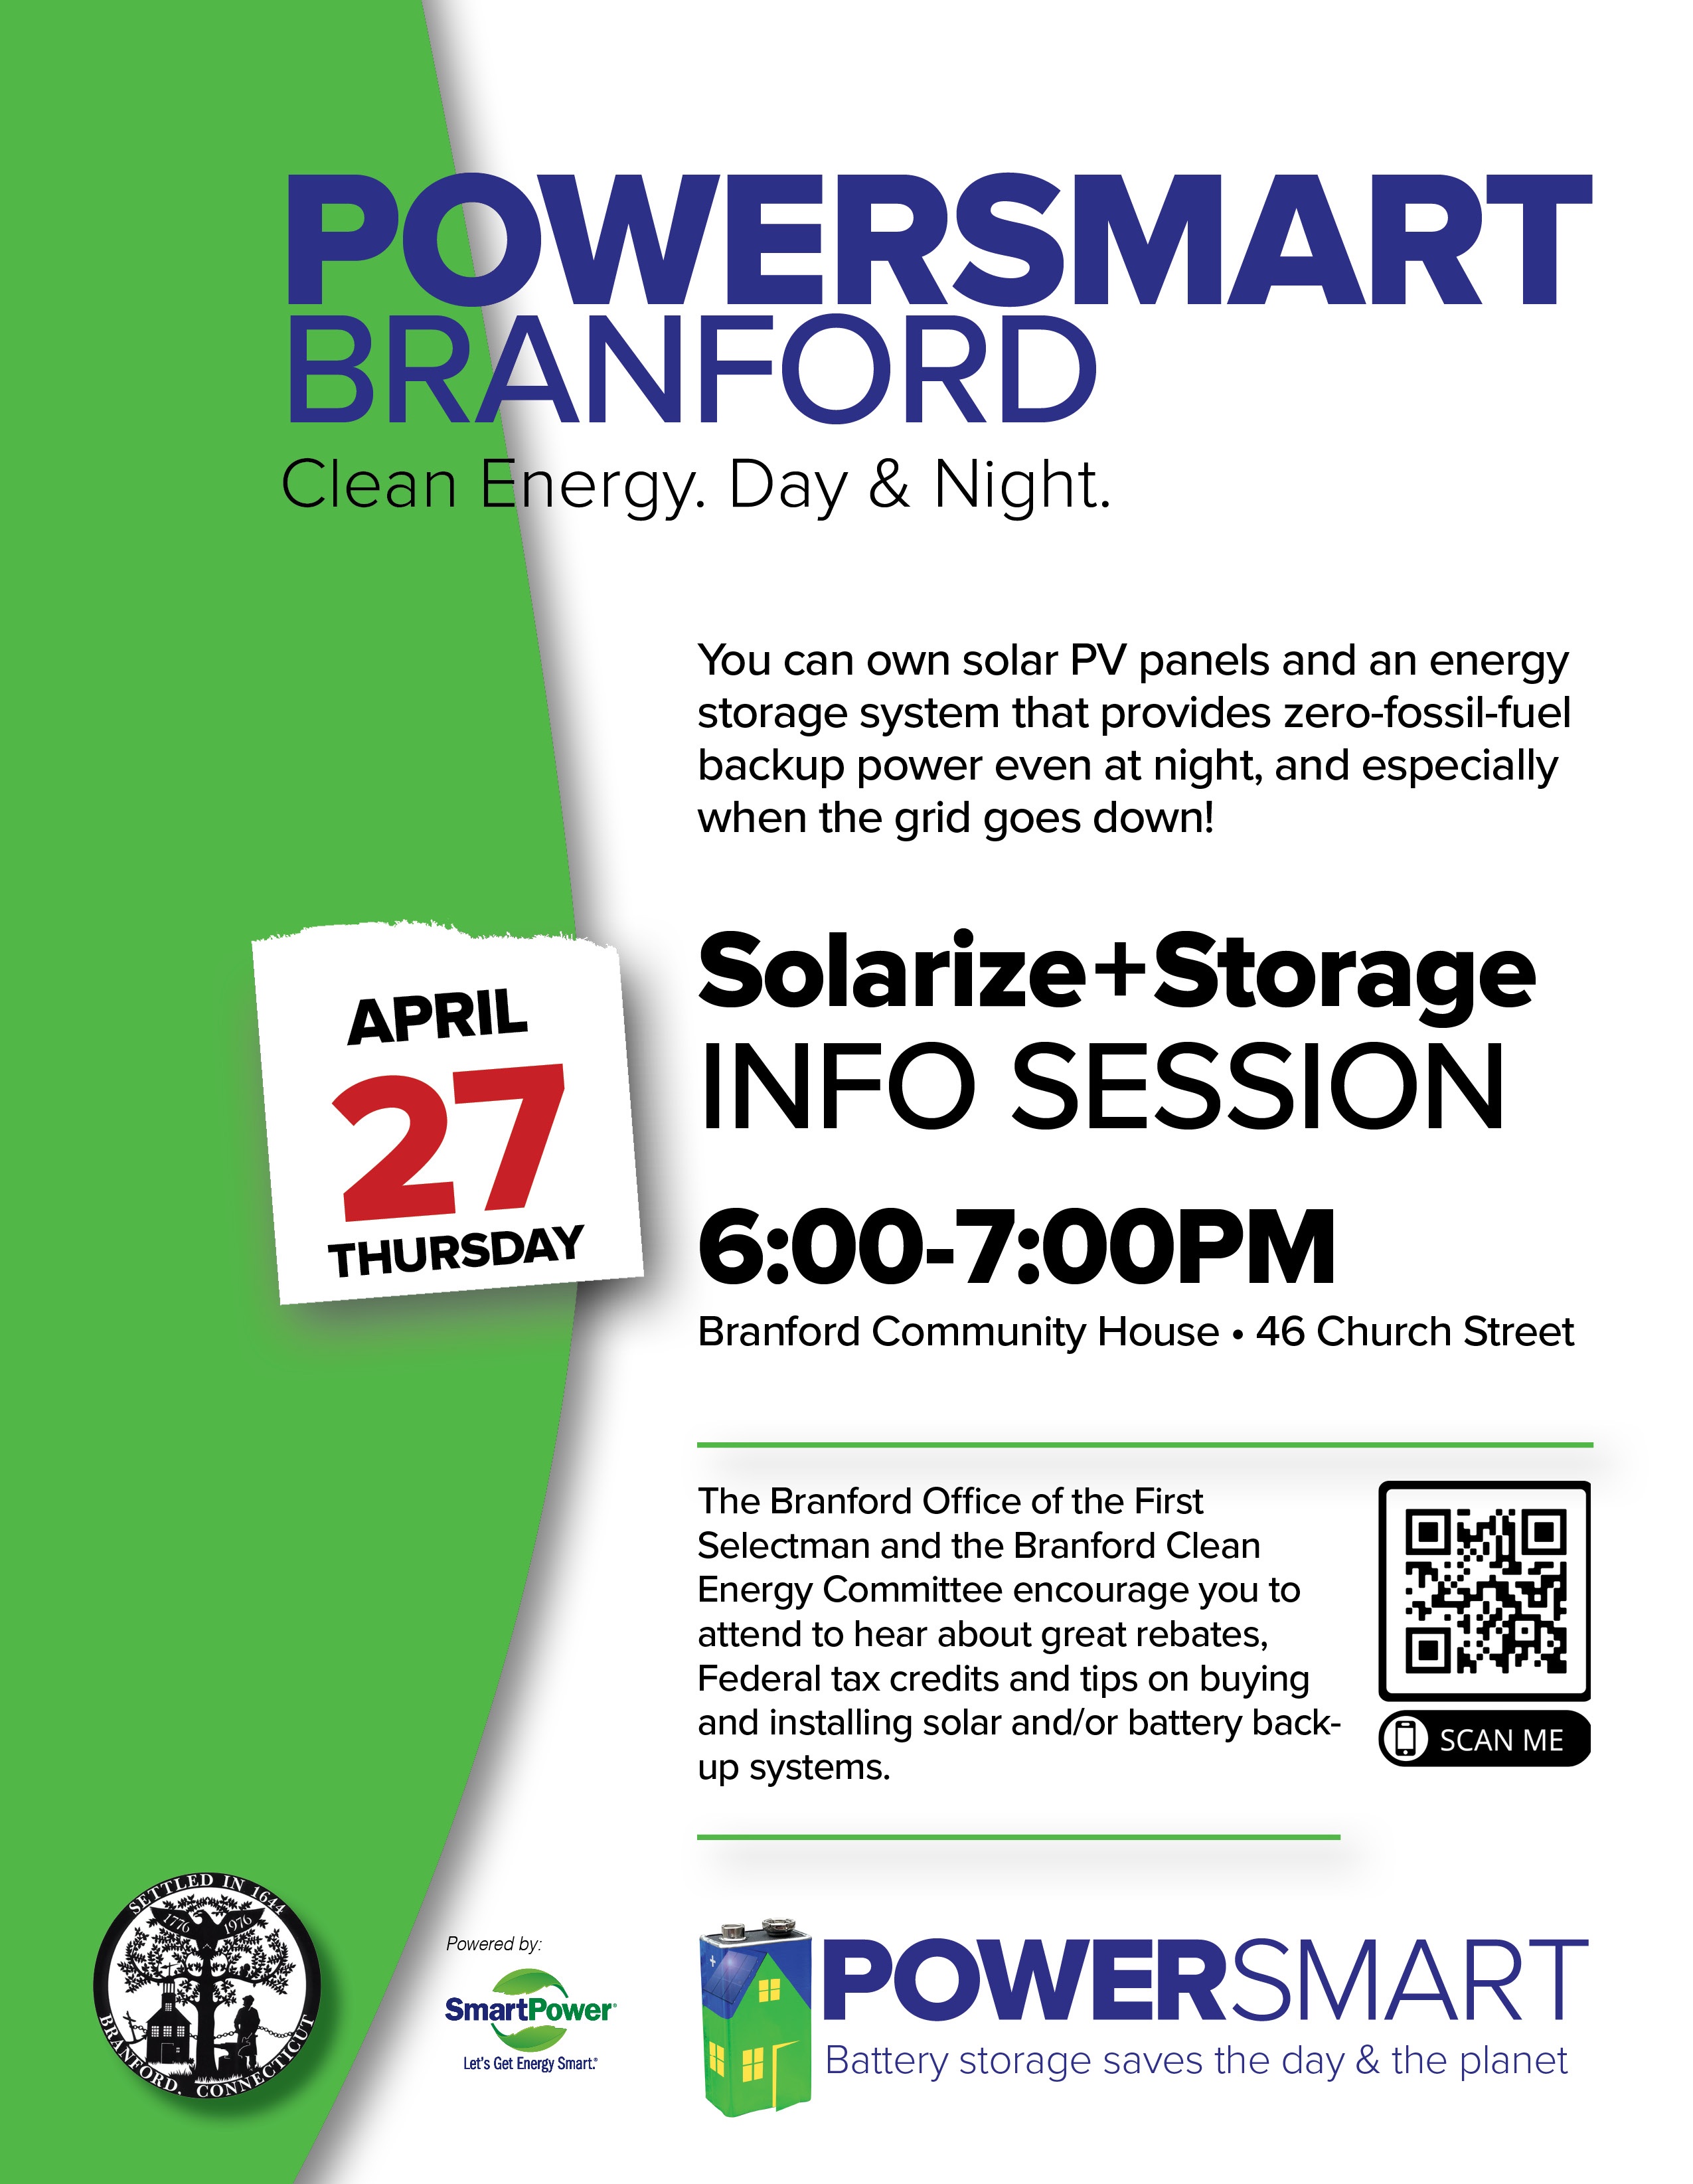 PowerSmart Branford Launch Event